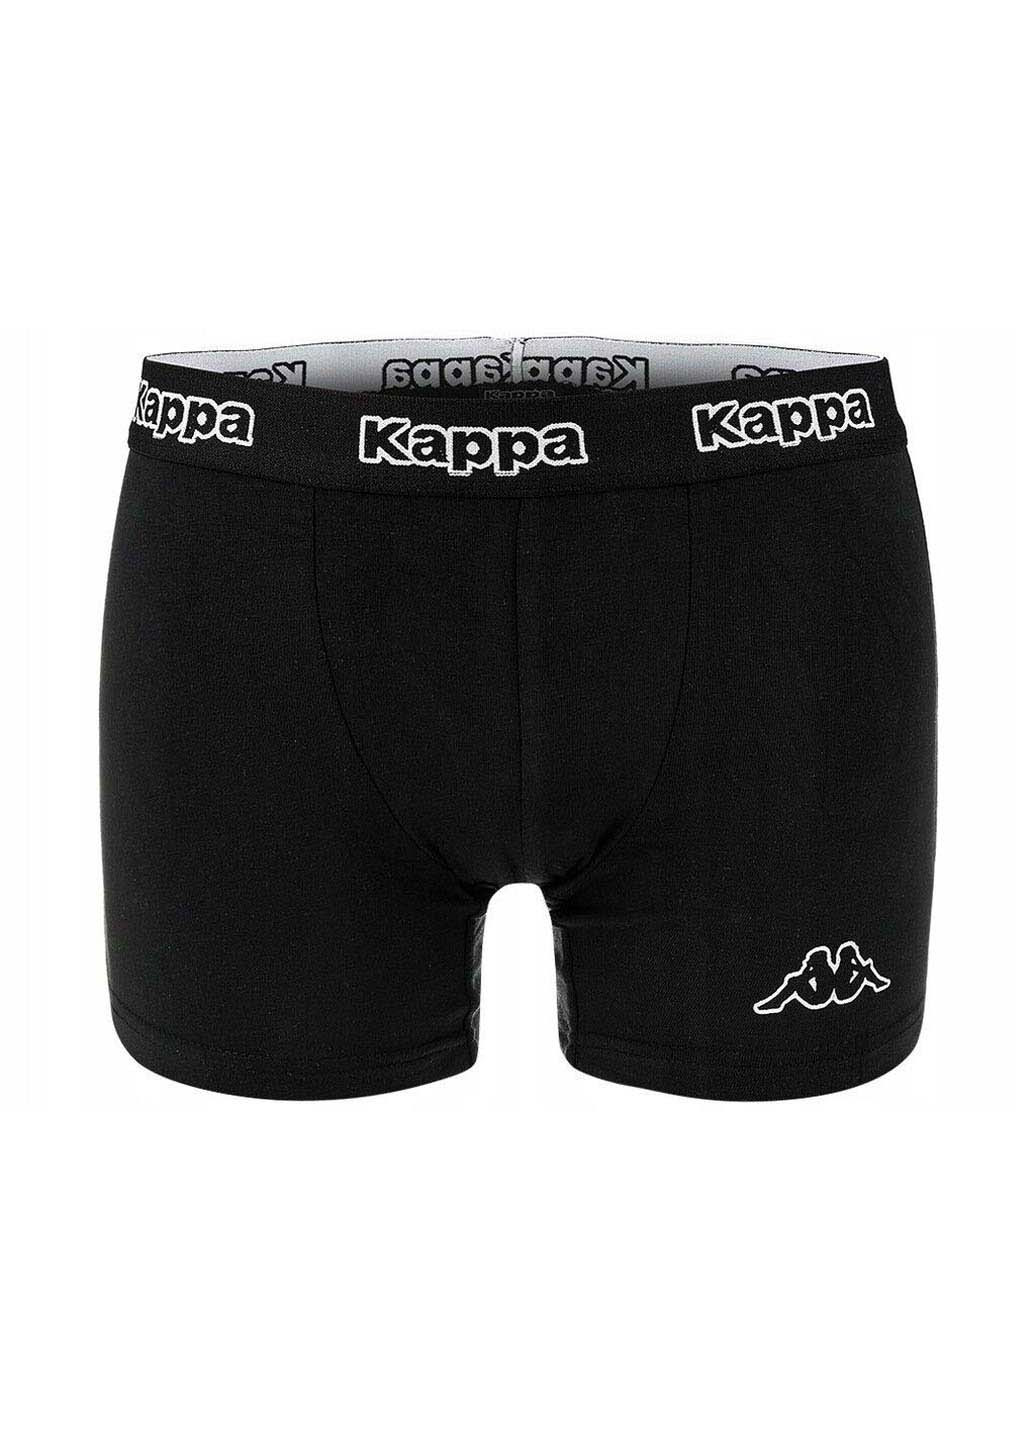 Трусы Kappa Men's Boxer 2-pack боксеры комбинированные хлопок